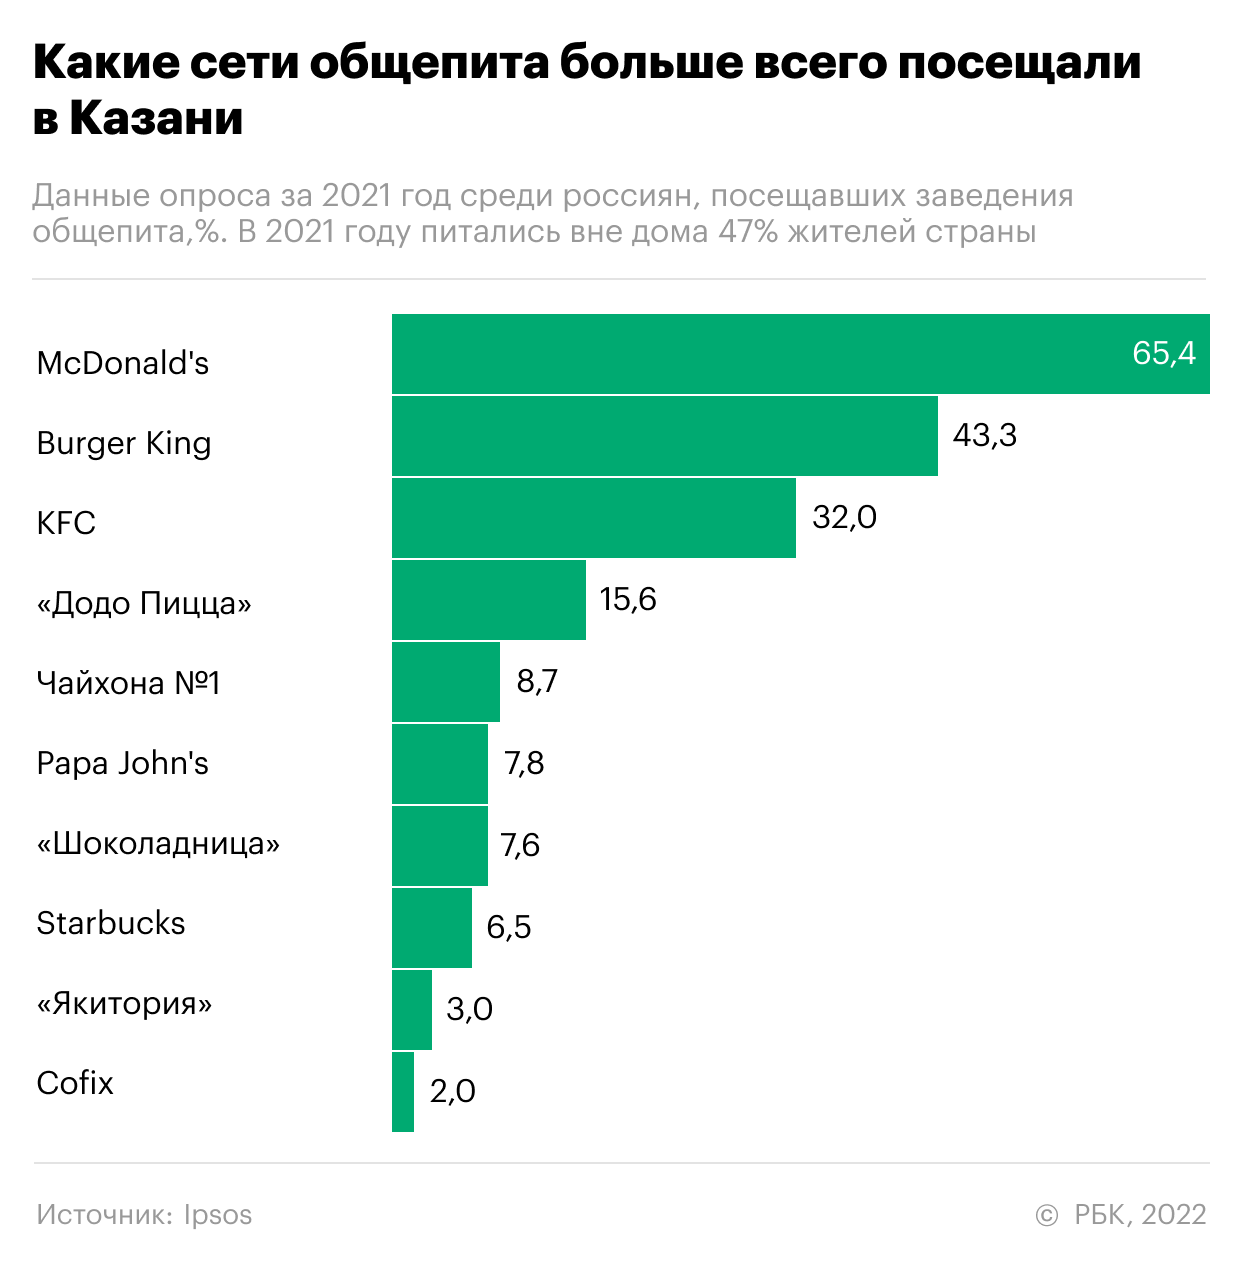 Самый популярный общепит у россиян. Инфографика